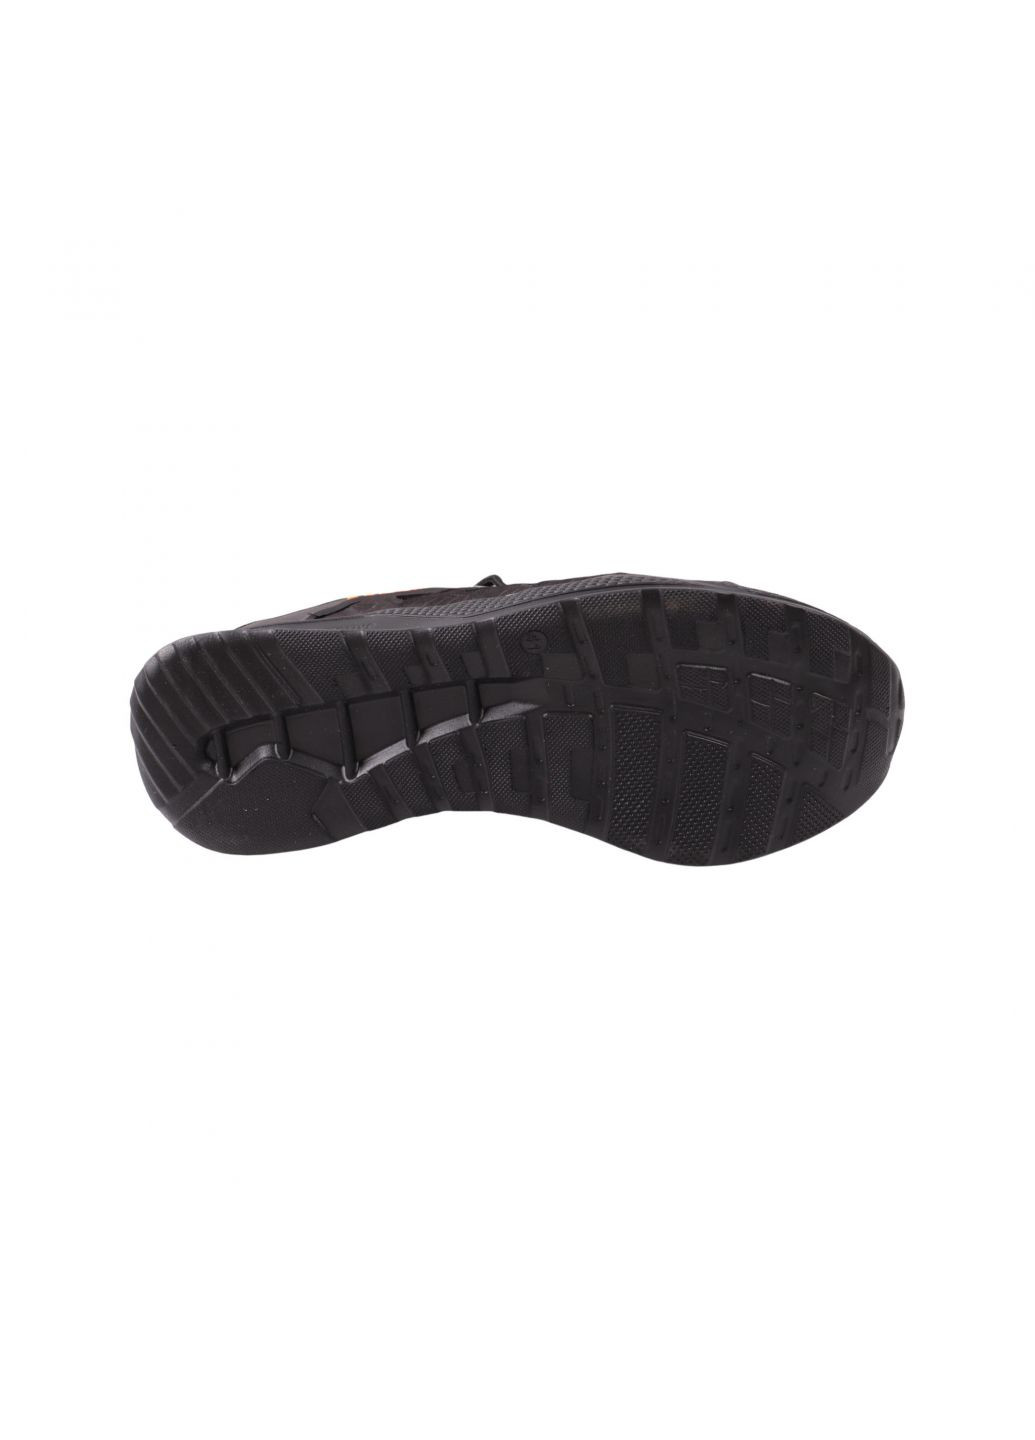 Черные кроссовки мужские черные натуральный нубук MDK 48-23DTS